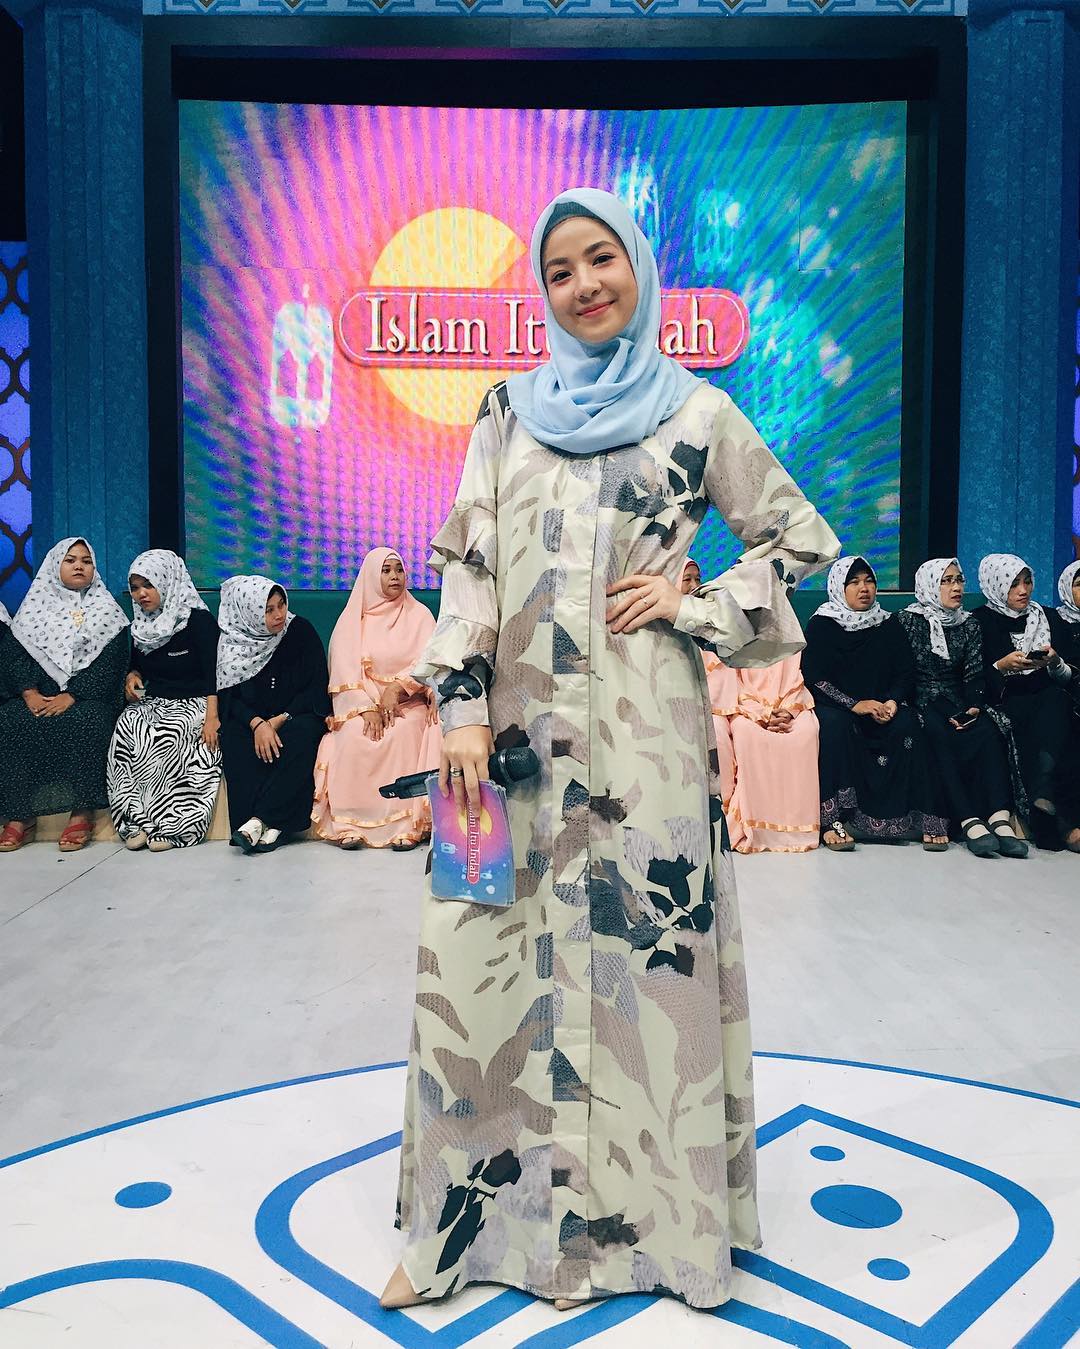  Tampil serba casual dan tetap menarik di hari lebaran tentunya keinginan banyak orang termas ∝ 54 Model Baju Muslim Remaja Outfit Berhijab Ala Selebgram 2018